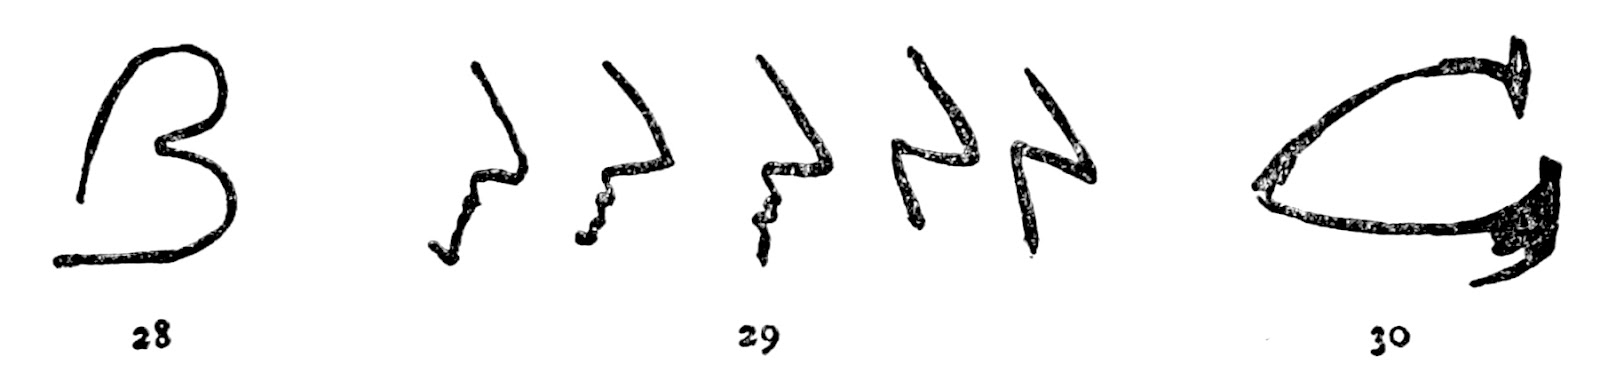 童話『アルファベットのどのように作られたか』の２８と２９と３０の挿絵